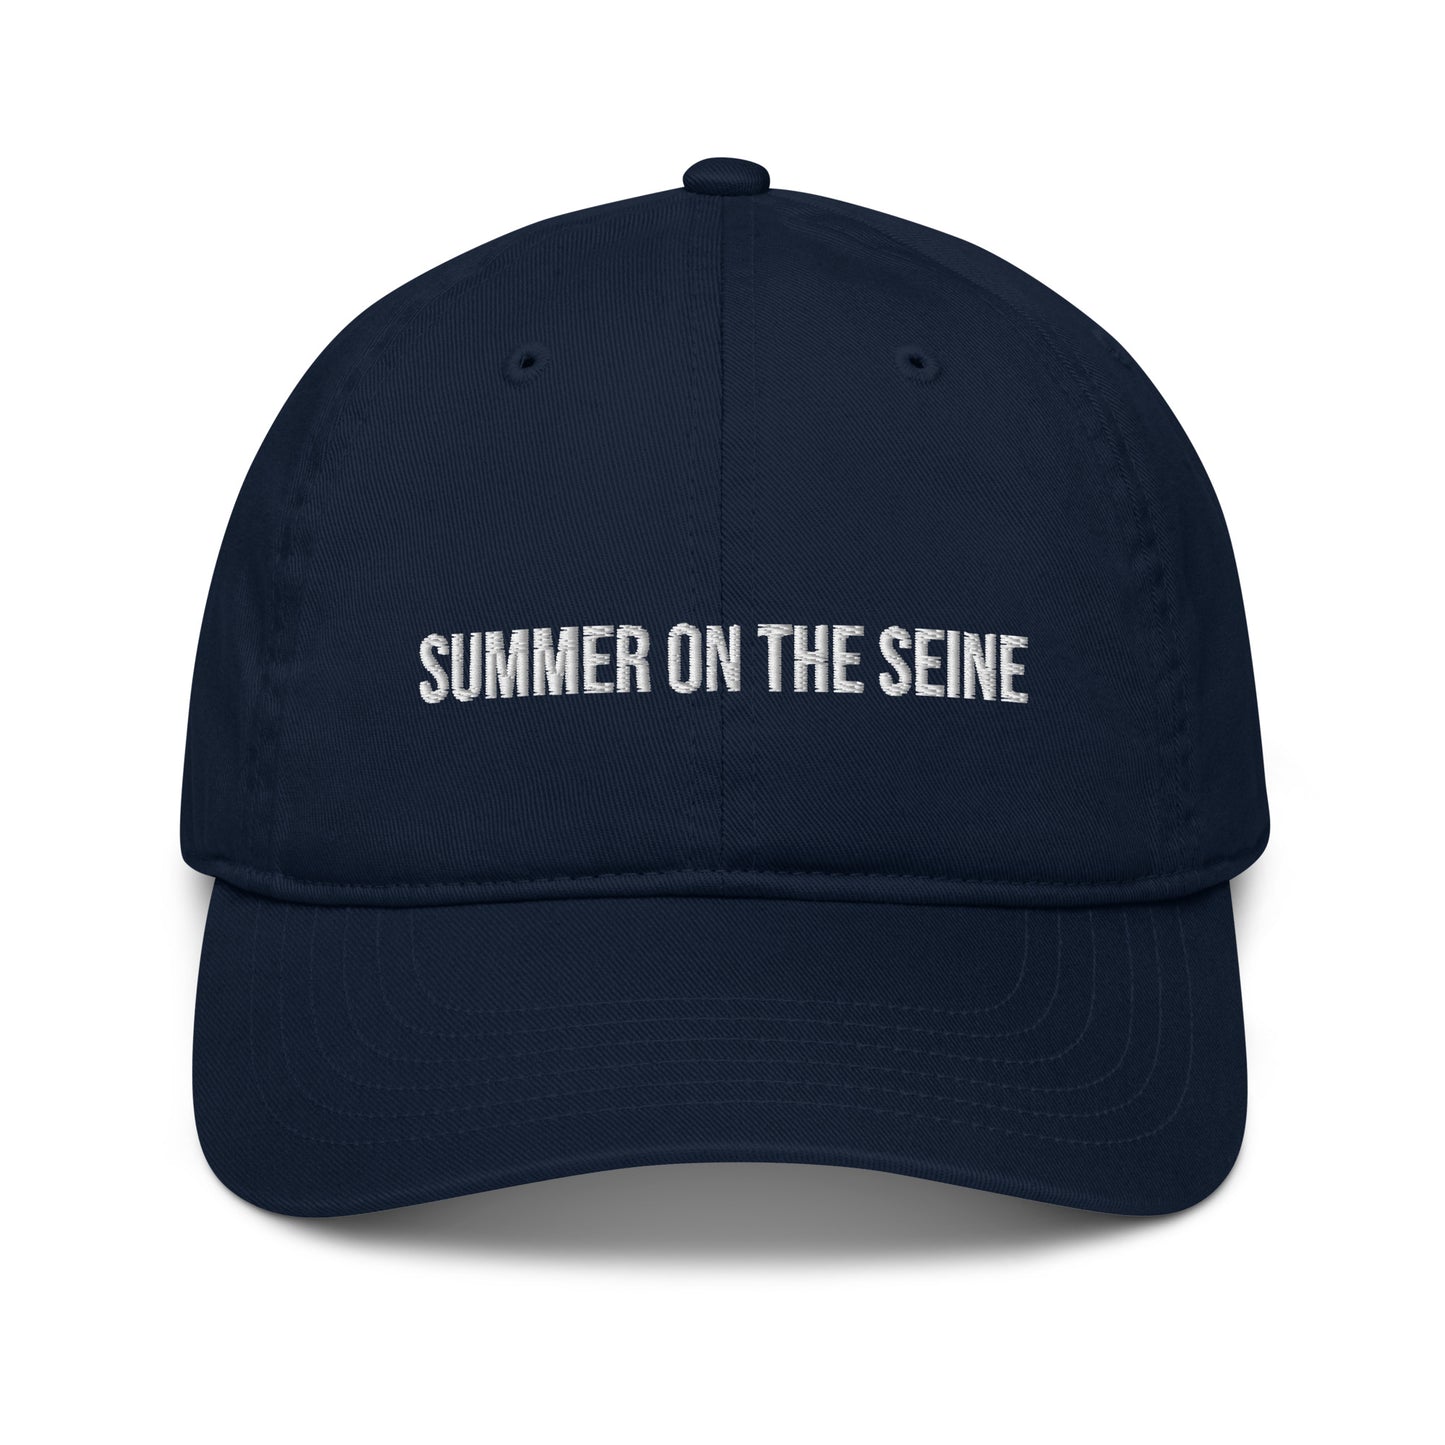 Summer on the Seine Embroidered Dad Hat